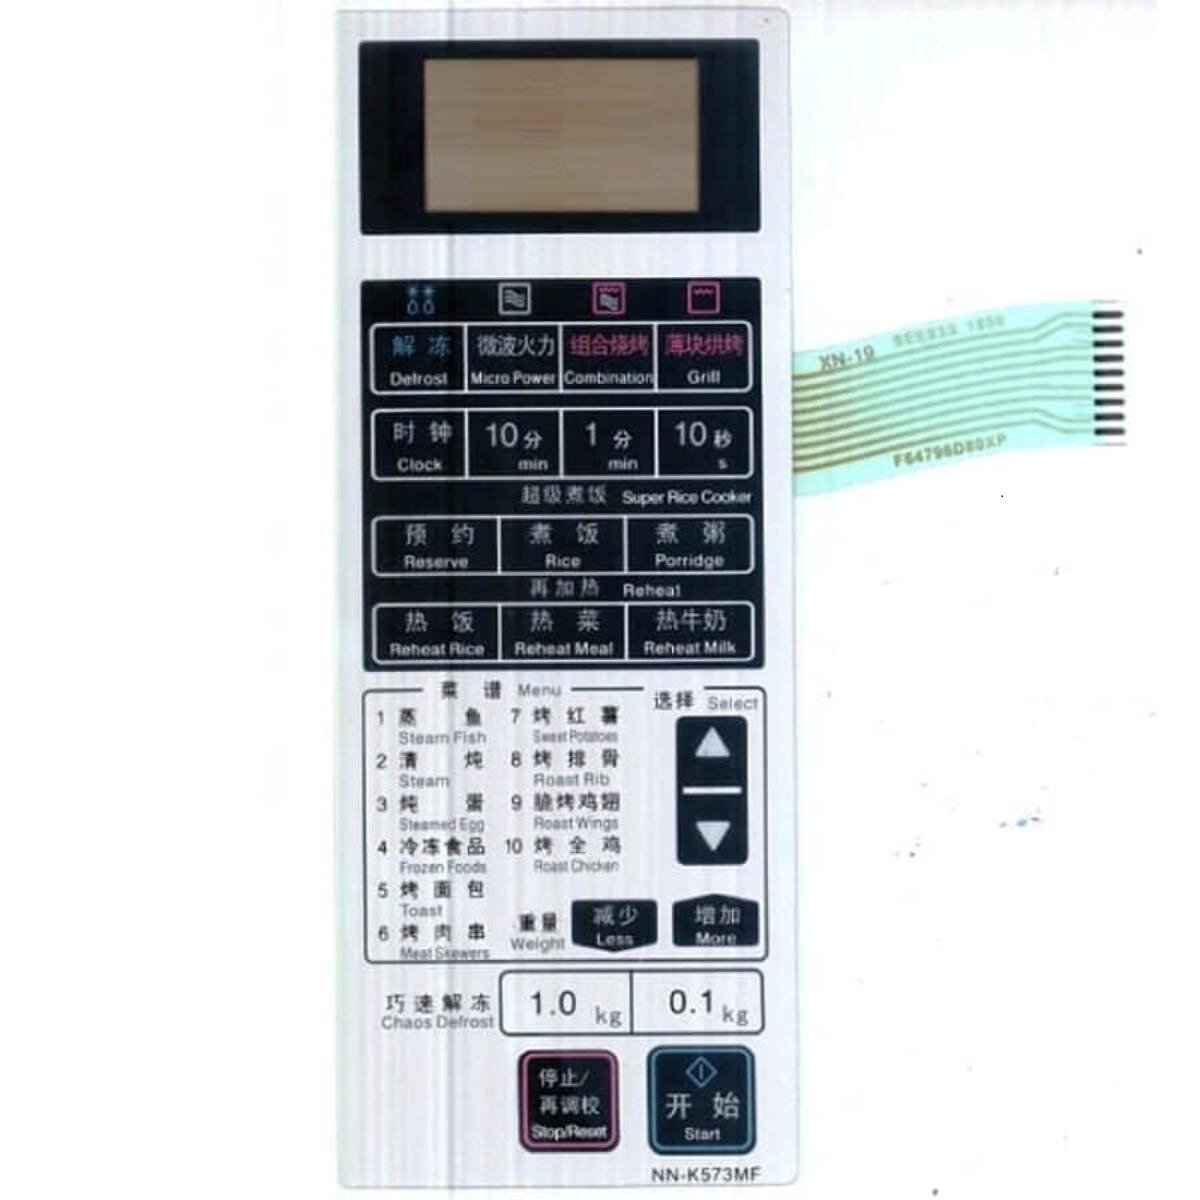 Сенсорная панель NN-K573MF английский-китайский для СВЧ (микроволновой печи) Panasonic